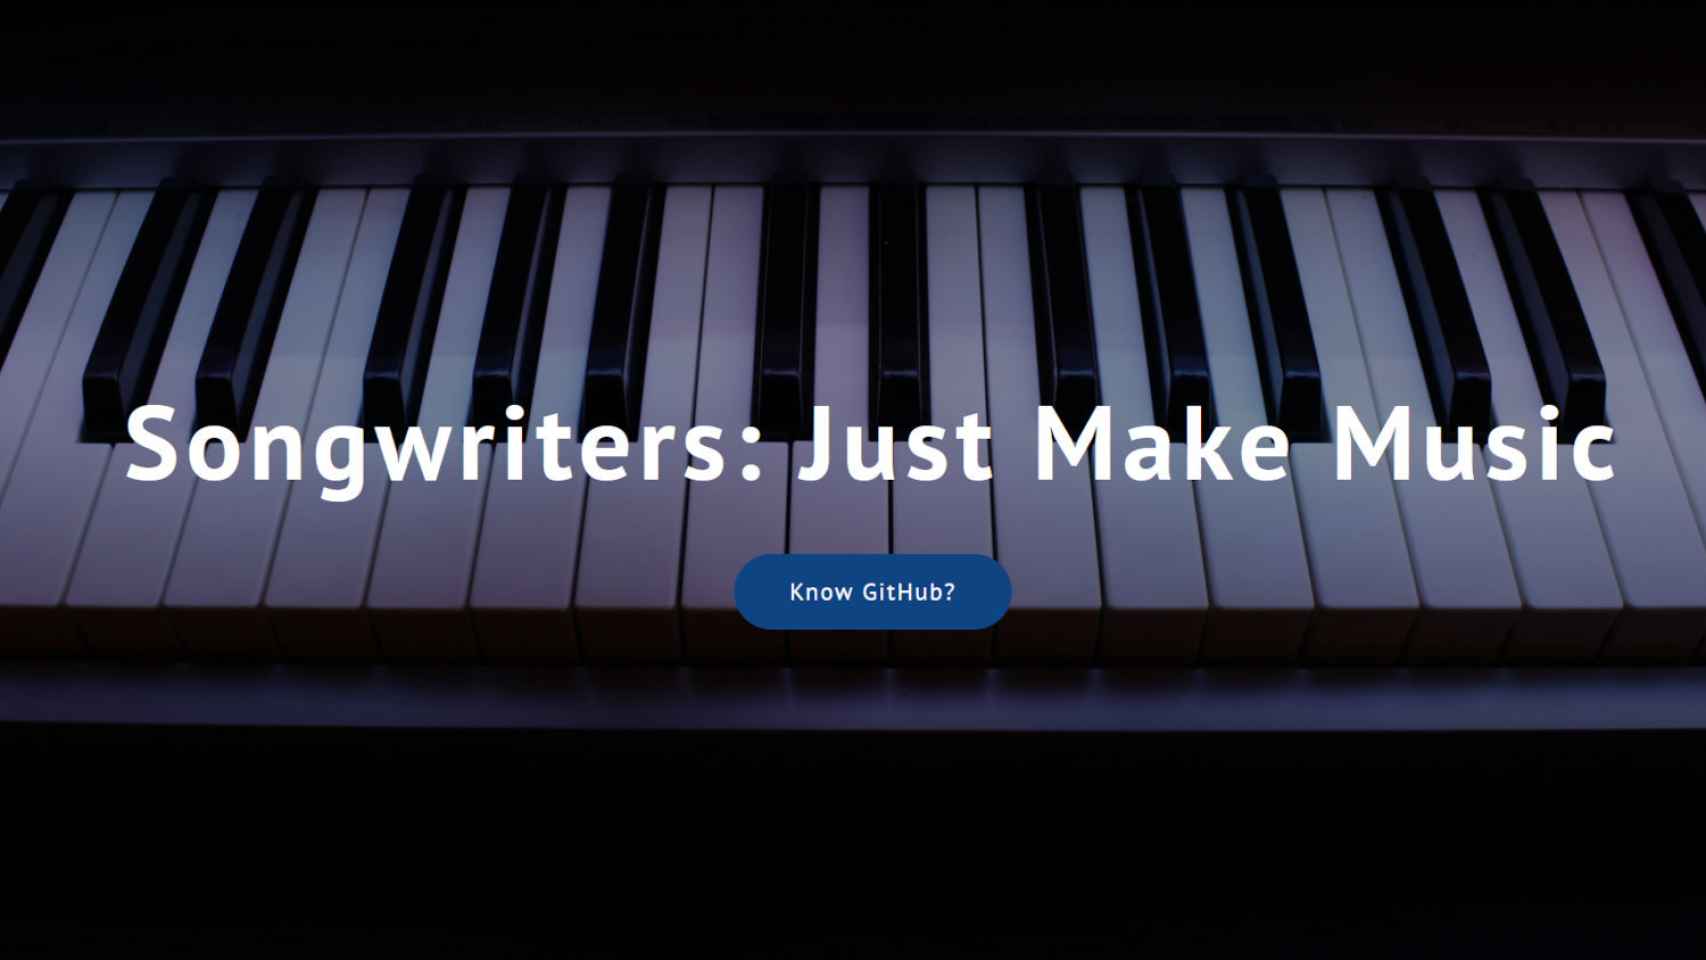 La página oficial del proyecto pide a los autores que sólo creen música